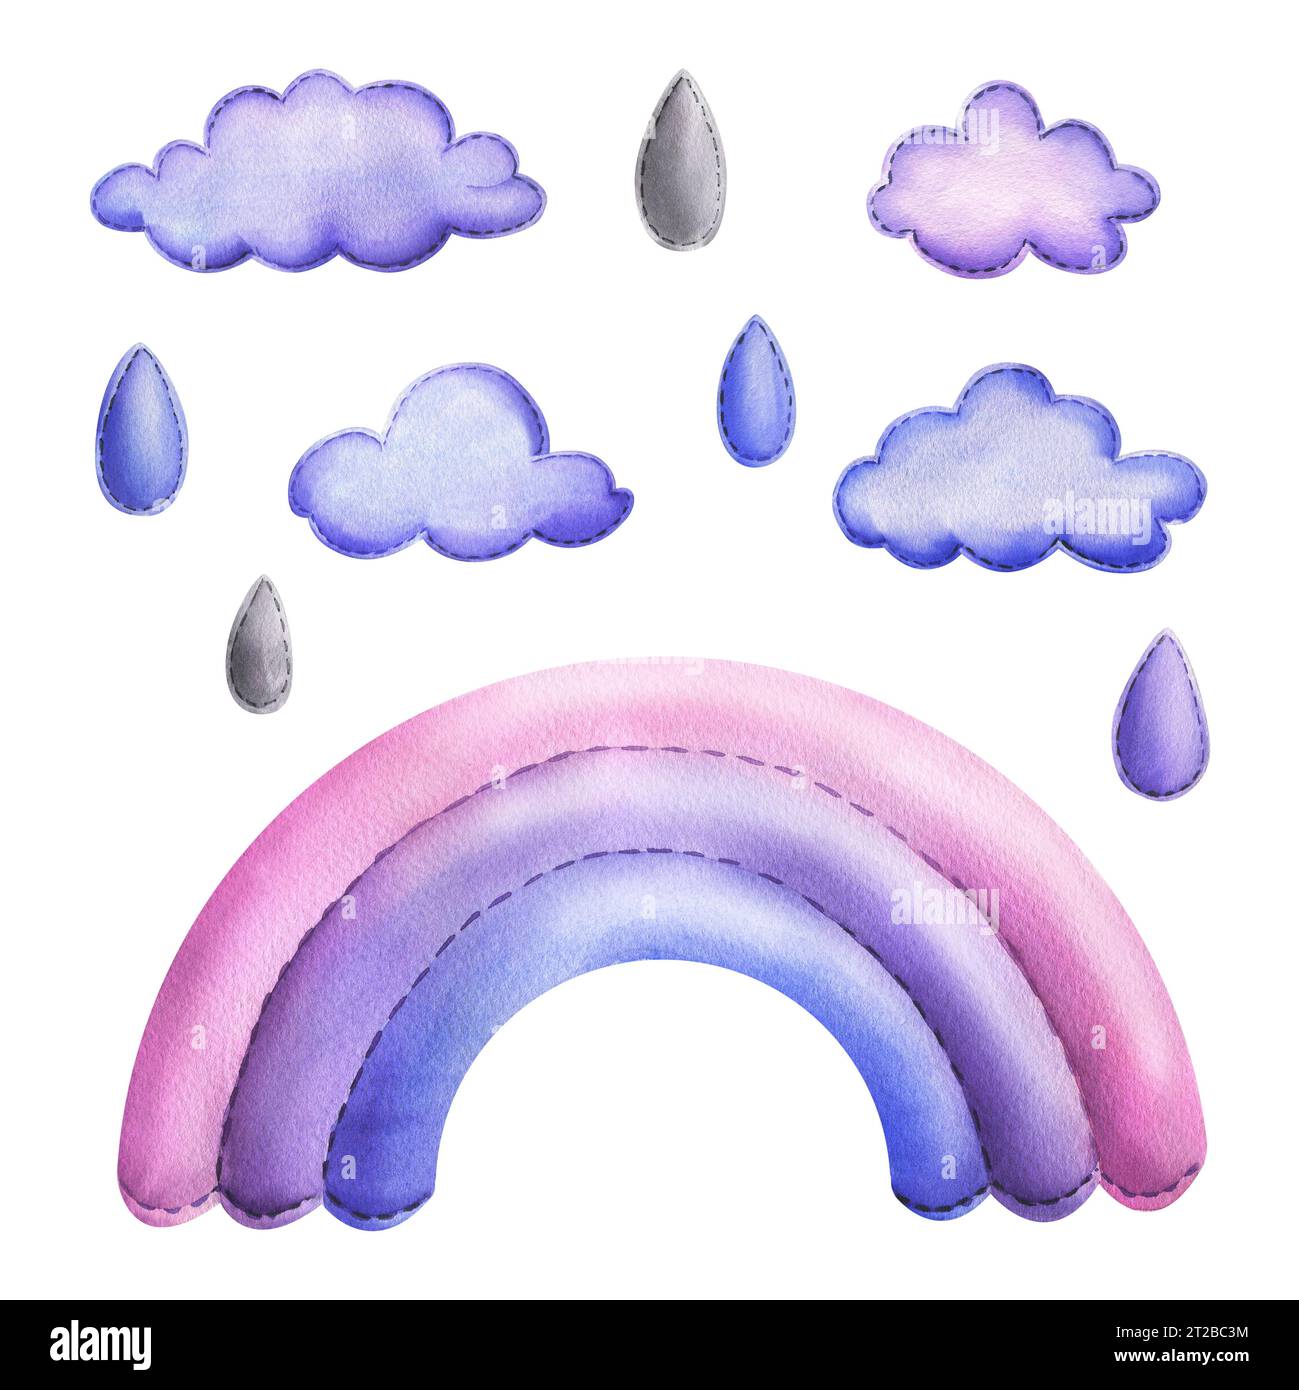 Bleu, arc-en-ciel lilas, nuages, gouttes de pluie sont cousus à partir de tissu avec des points de fil. Illustration à l'aquarelle, dessinée à la main. Ensemble d'objets isolés activé Banque D'Images